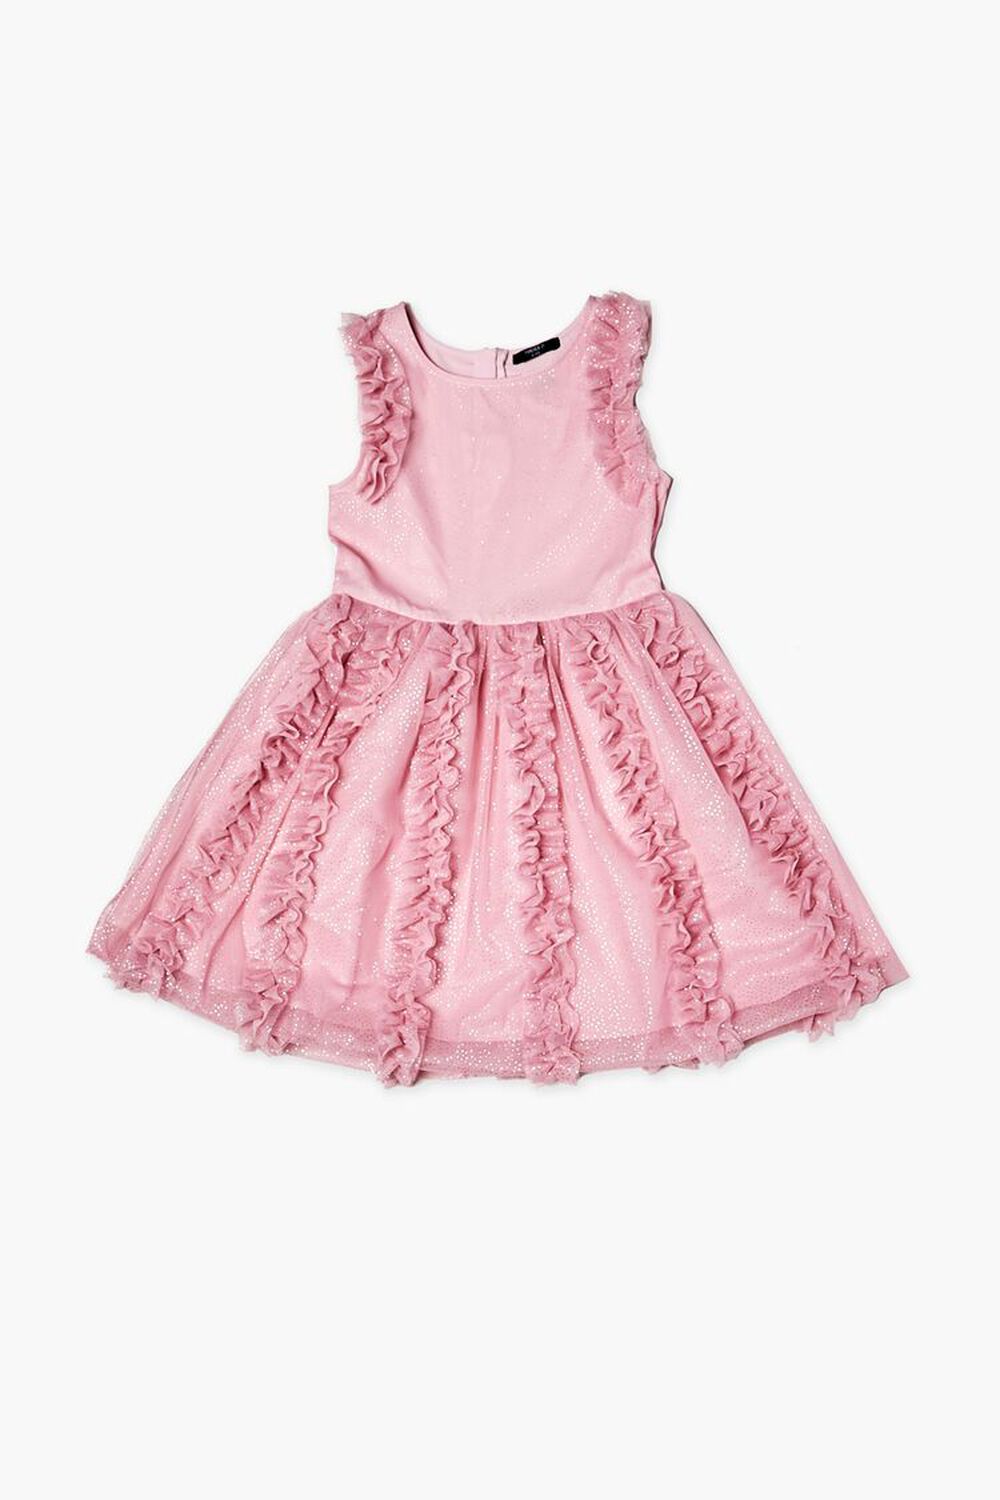 PINK Girls Glitter Ruffle-Trim Dress (Kids), image 1